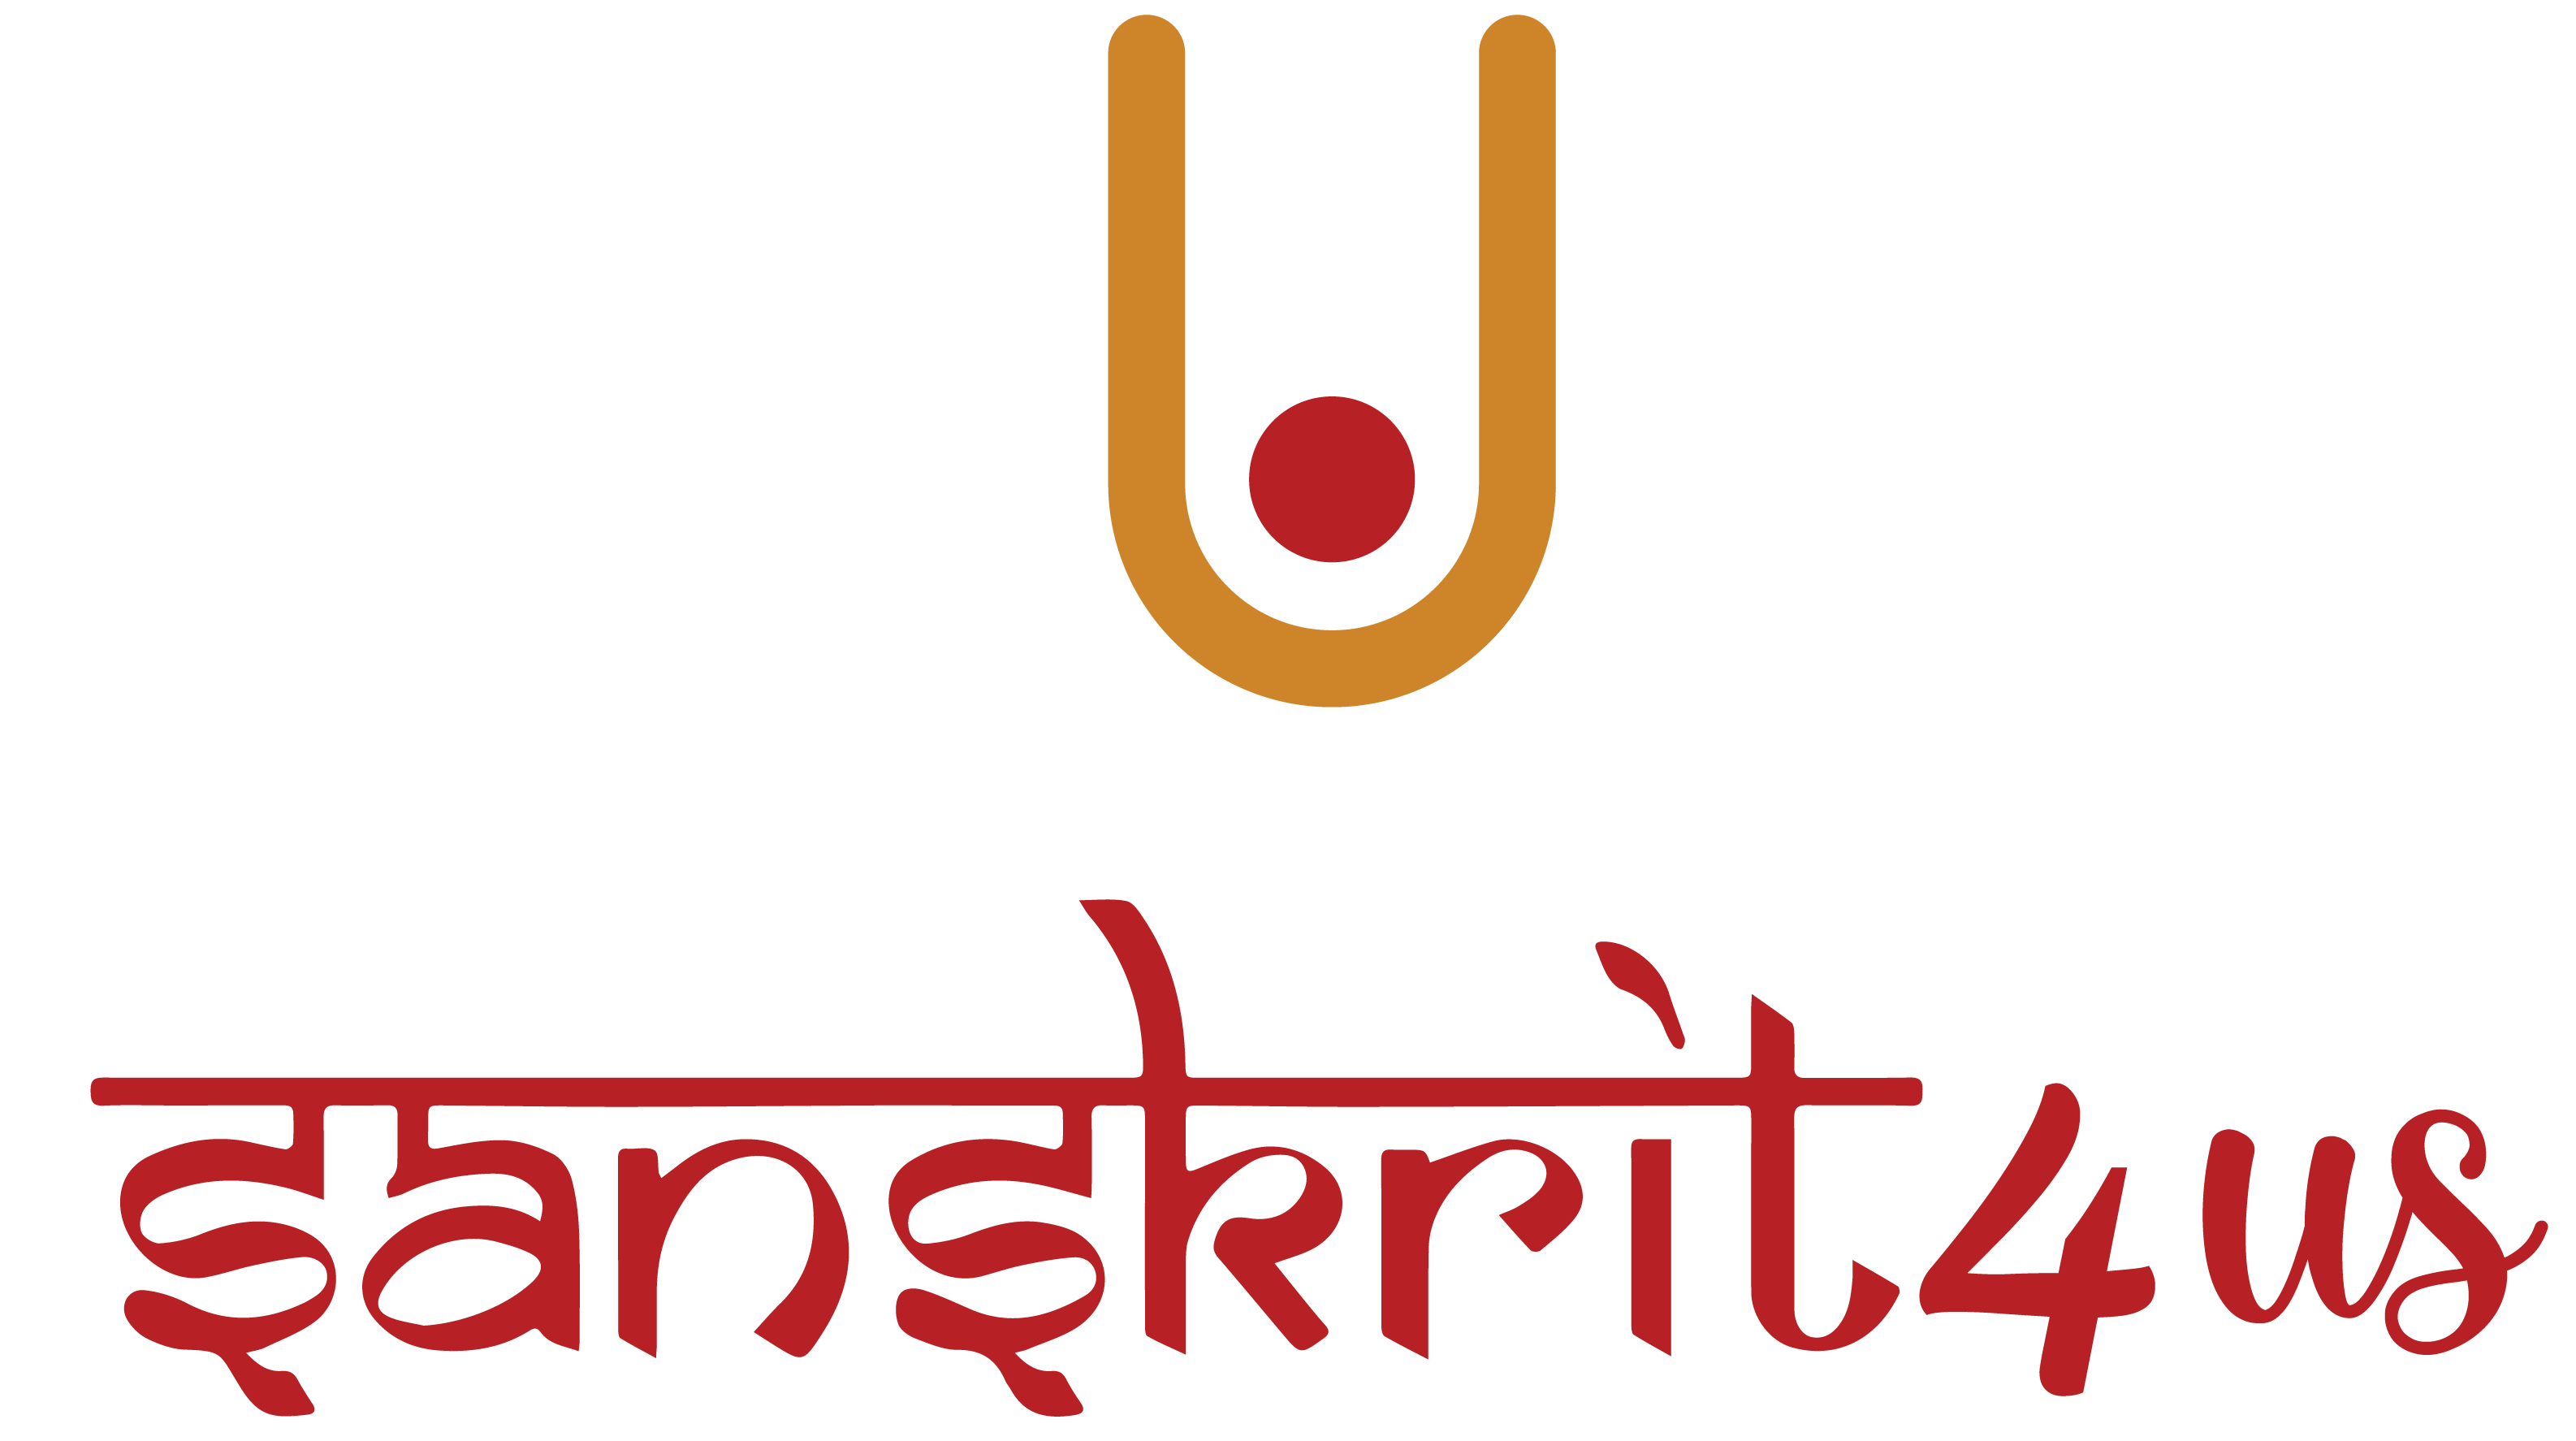 Sanskrit For Us